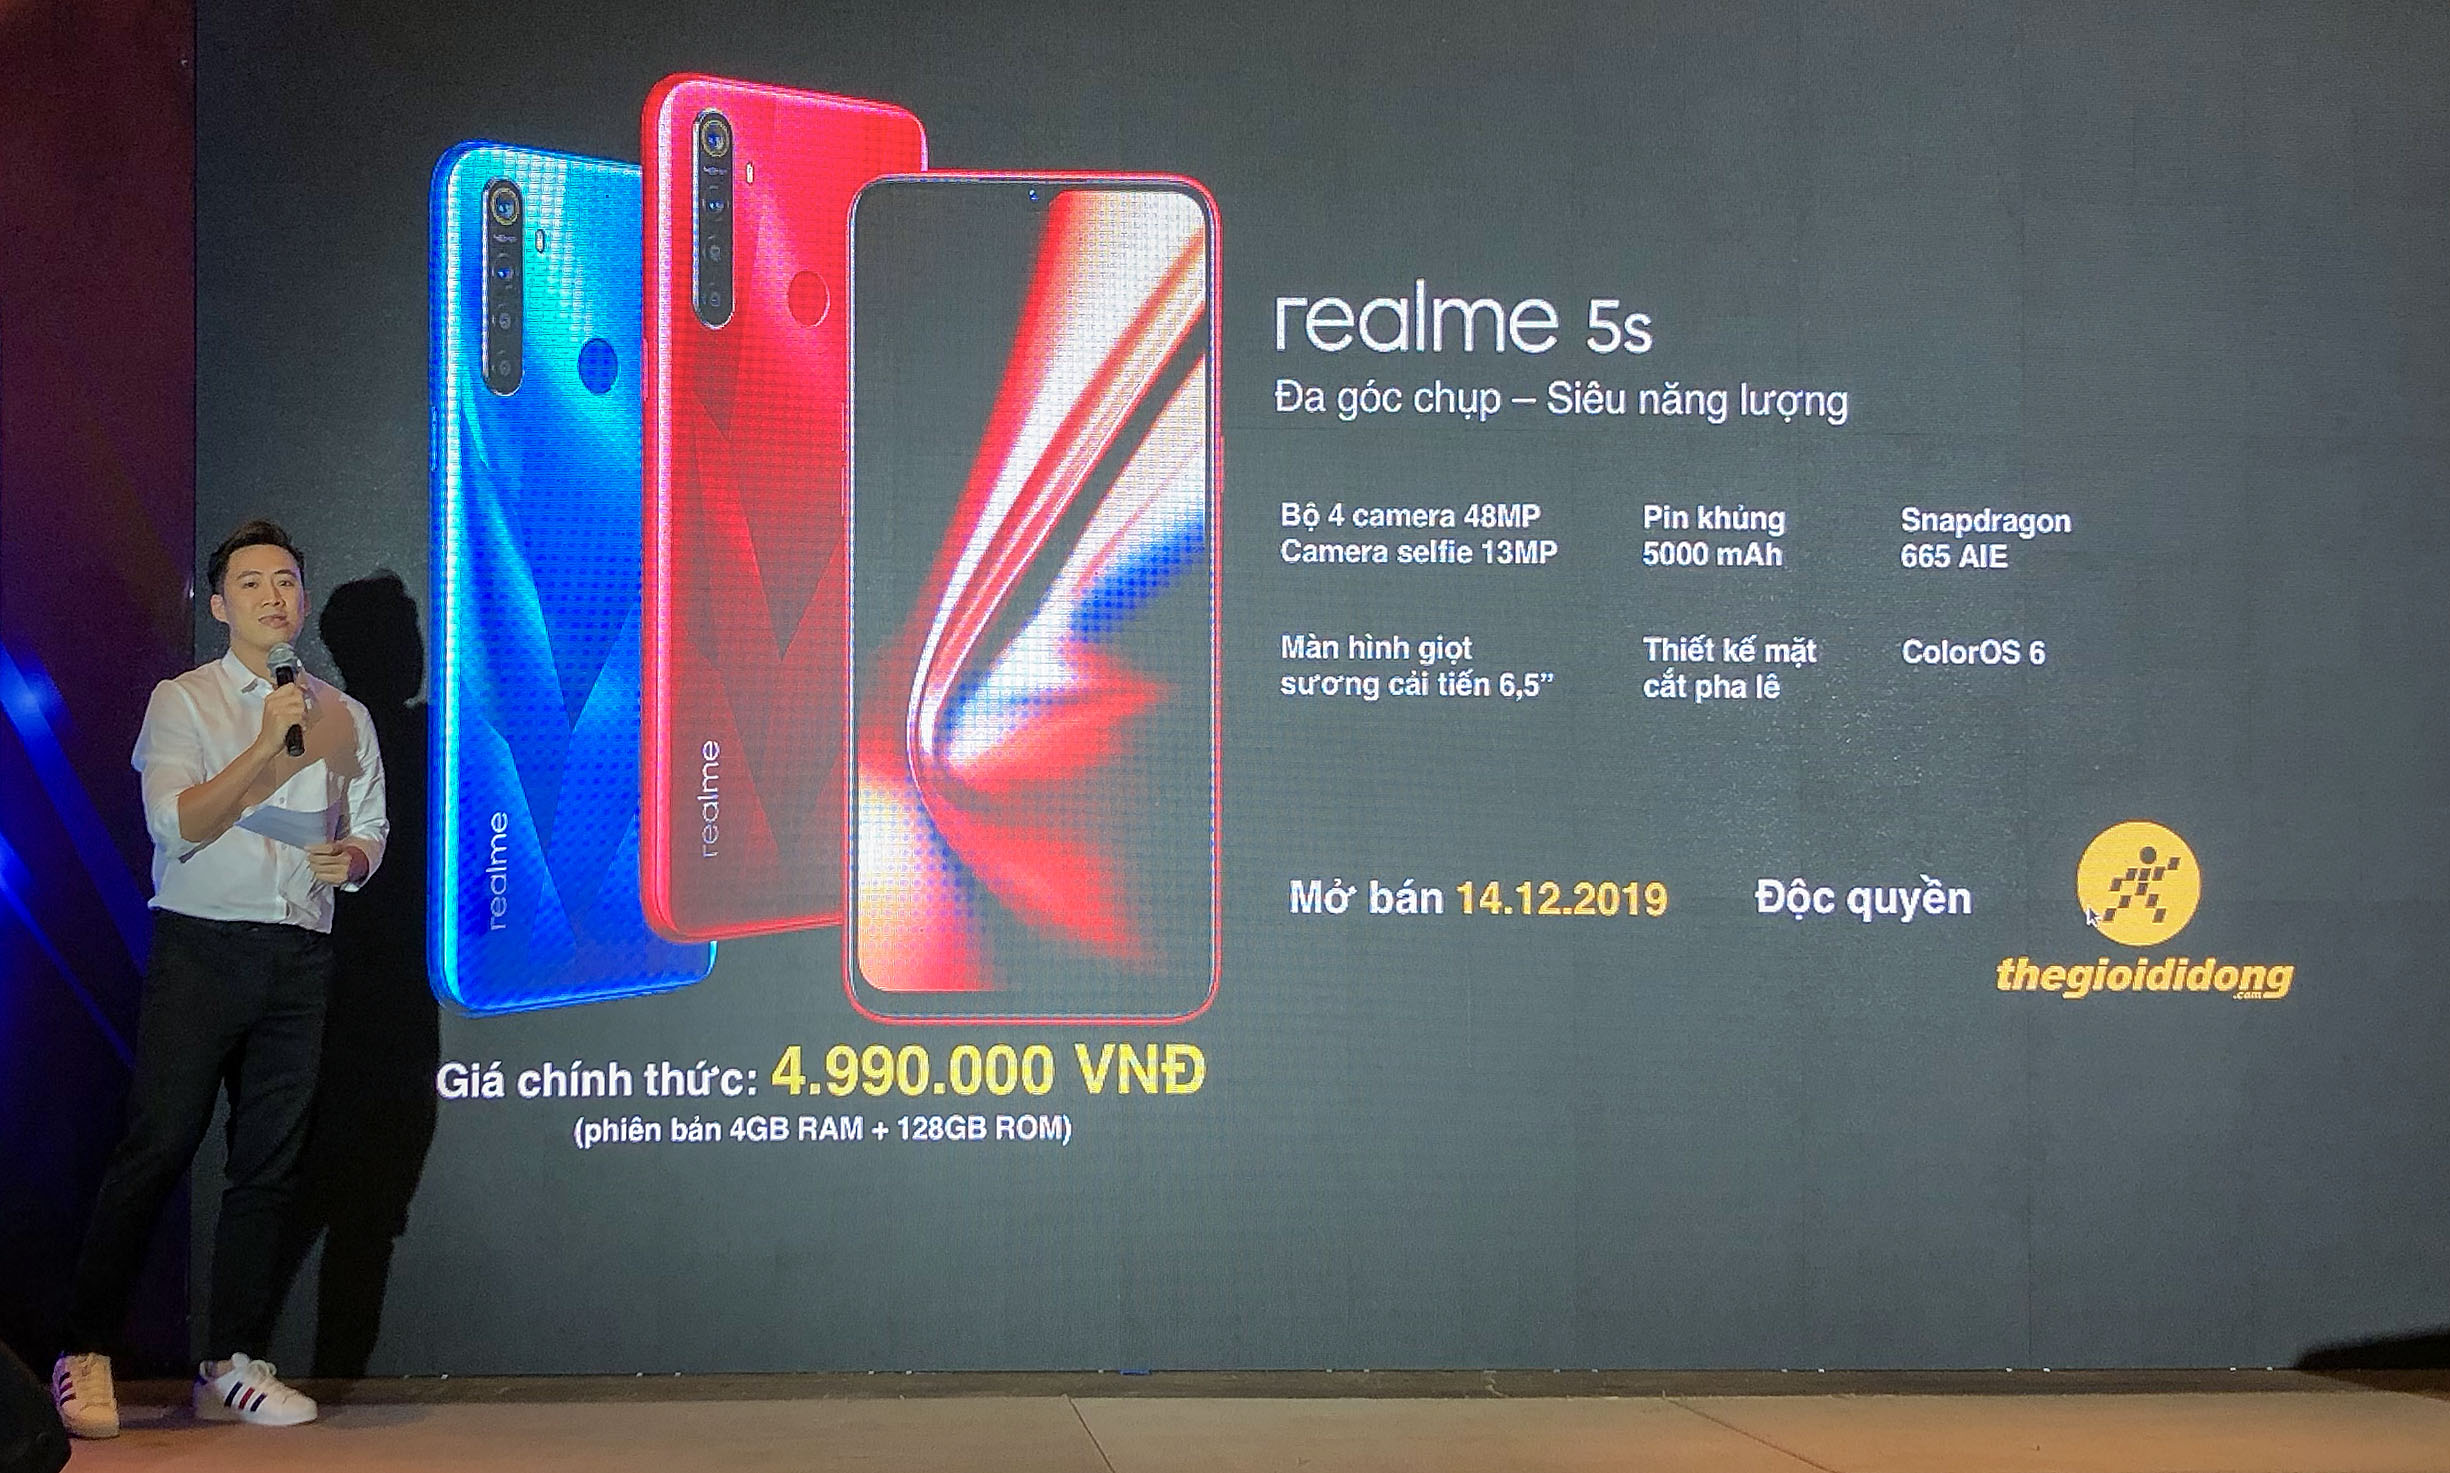 Realme 5s ra mắt, bán độc quyền ở Thế giới di động từ 14/12 giá 4,990,000 VND